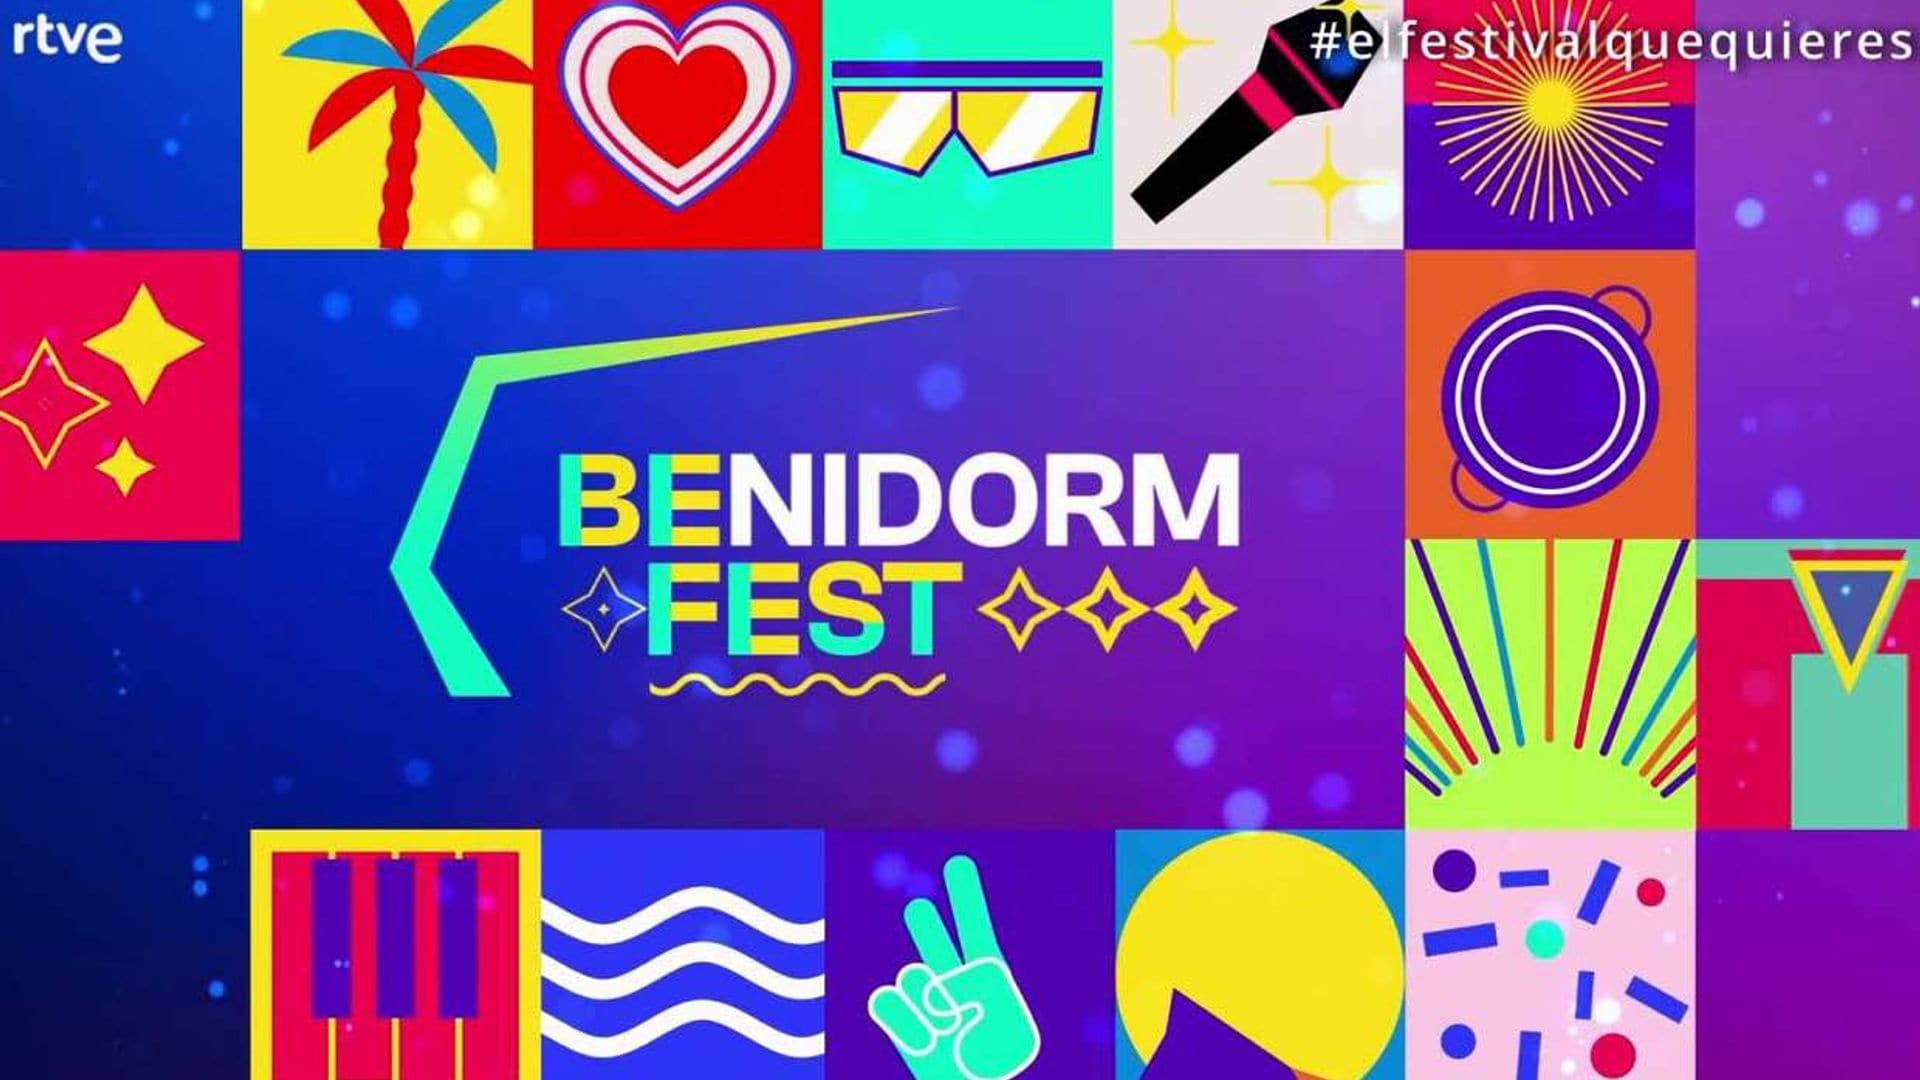 ¡El Benidorm Fest calienta motores! Así serán las semifinales y votaciones para elegir la canción para Eurovisión